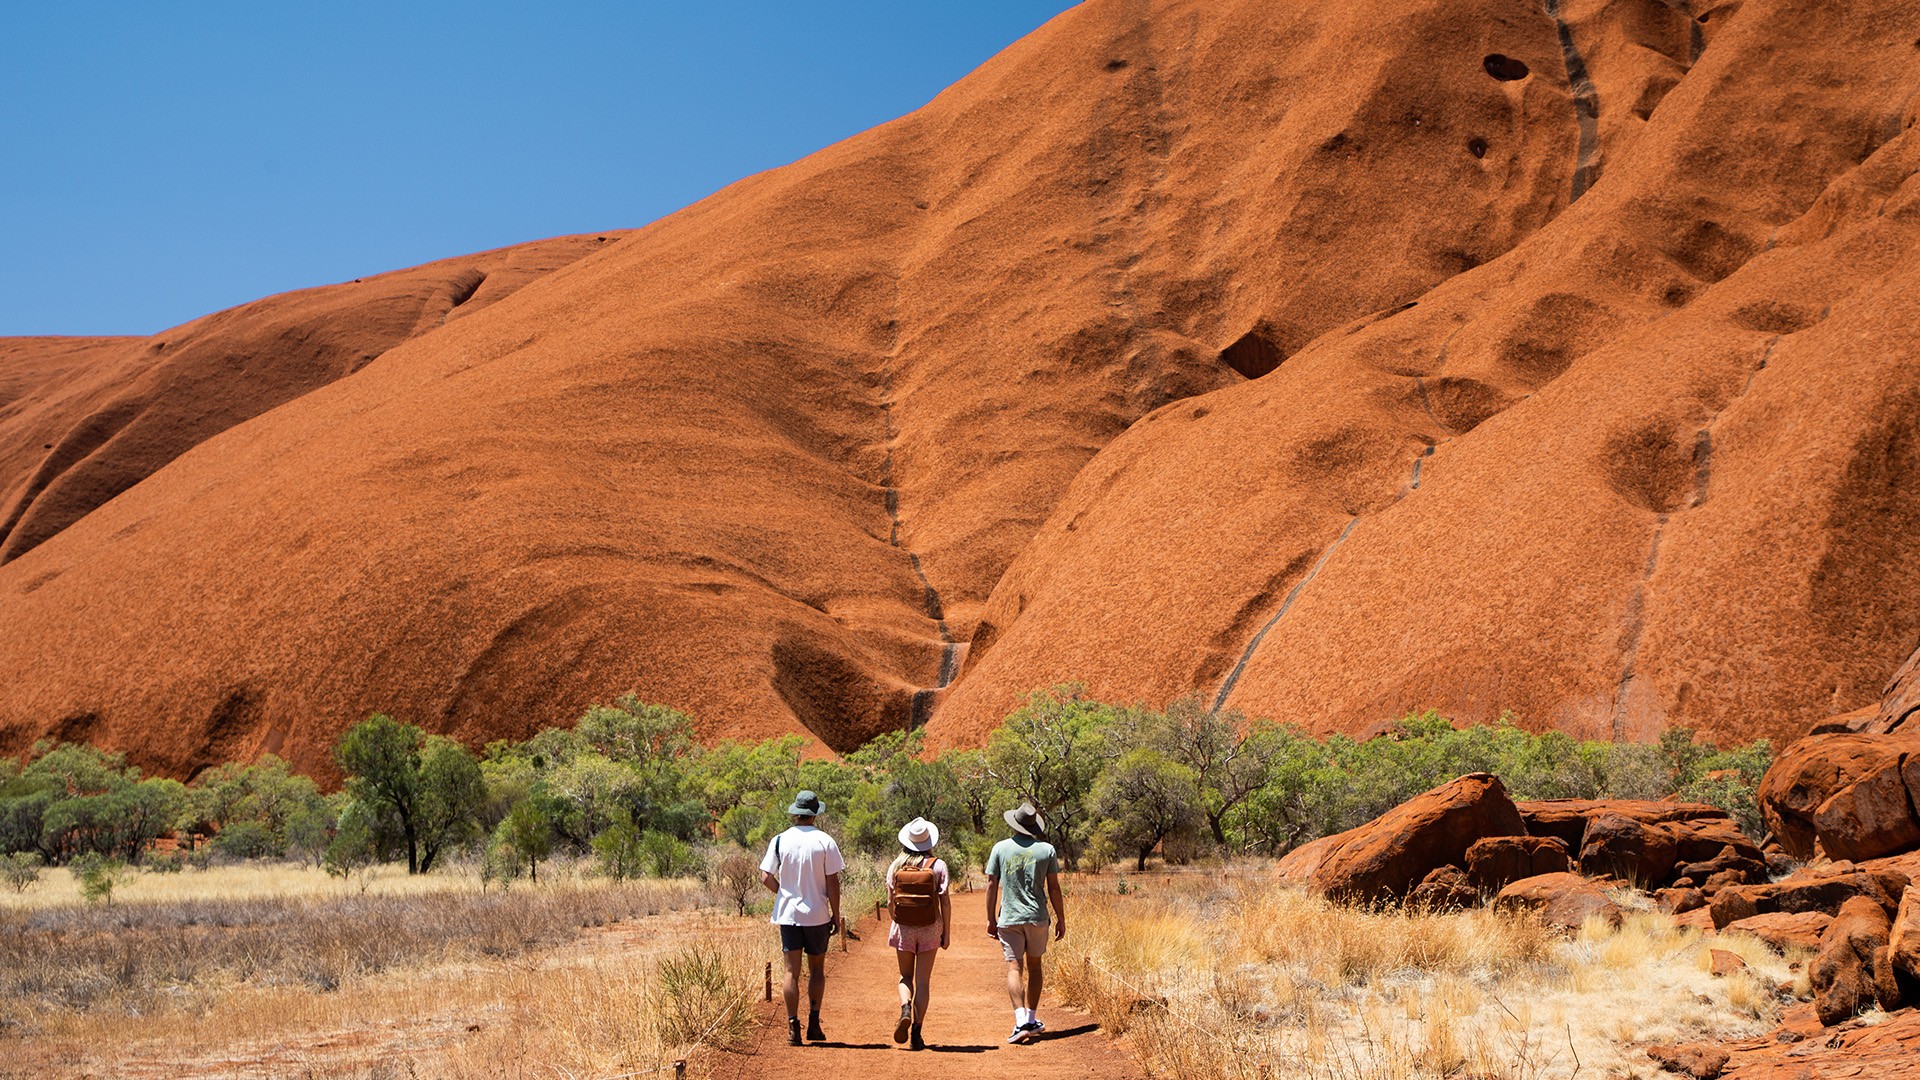 Uluru, image courtesy of Tourism NT